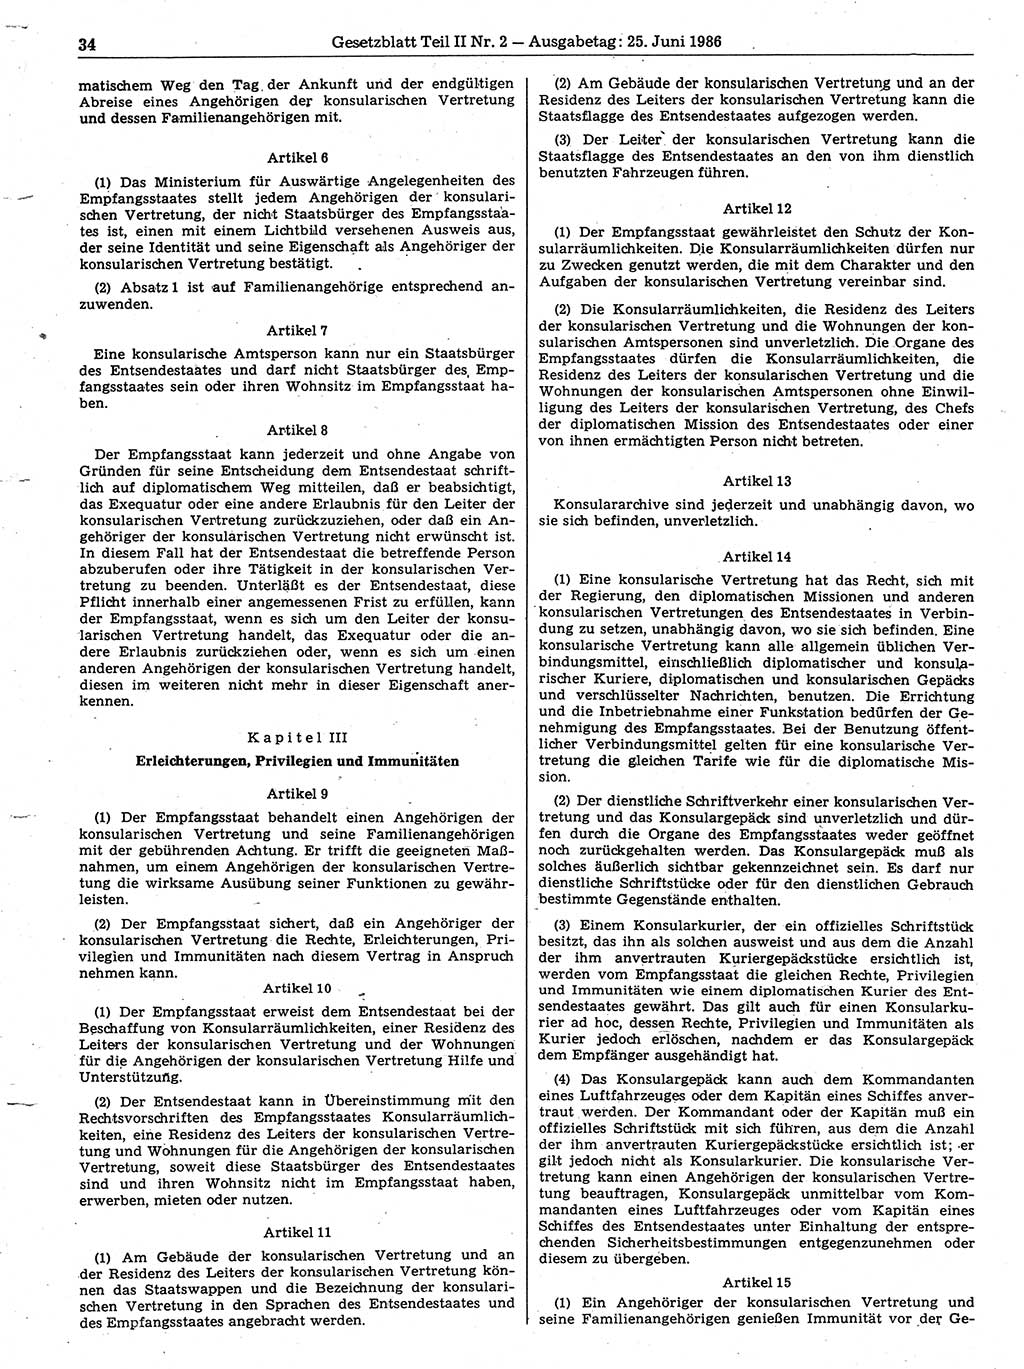 Gesetzblatt (GBl.) der Deutschen Demokratischen Republik (DDR) Teil ⅠⅠ 1986, Seite 34 (GBl. DDR ⅠⅠ 1986, S. 34)